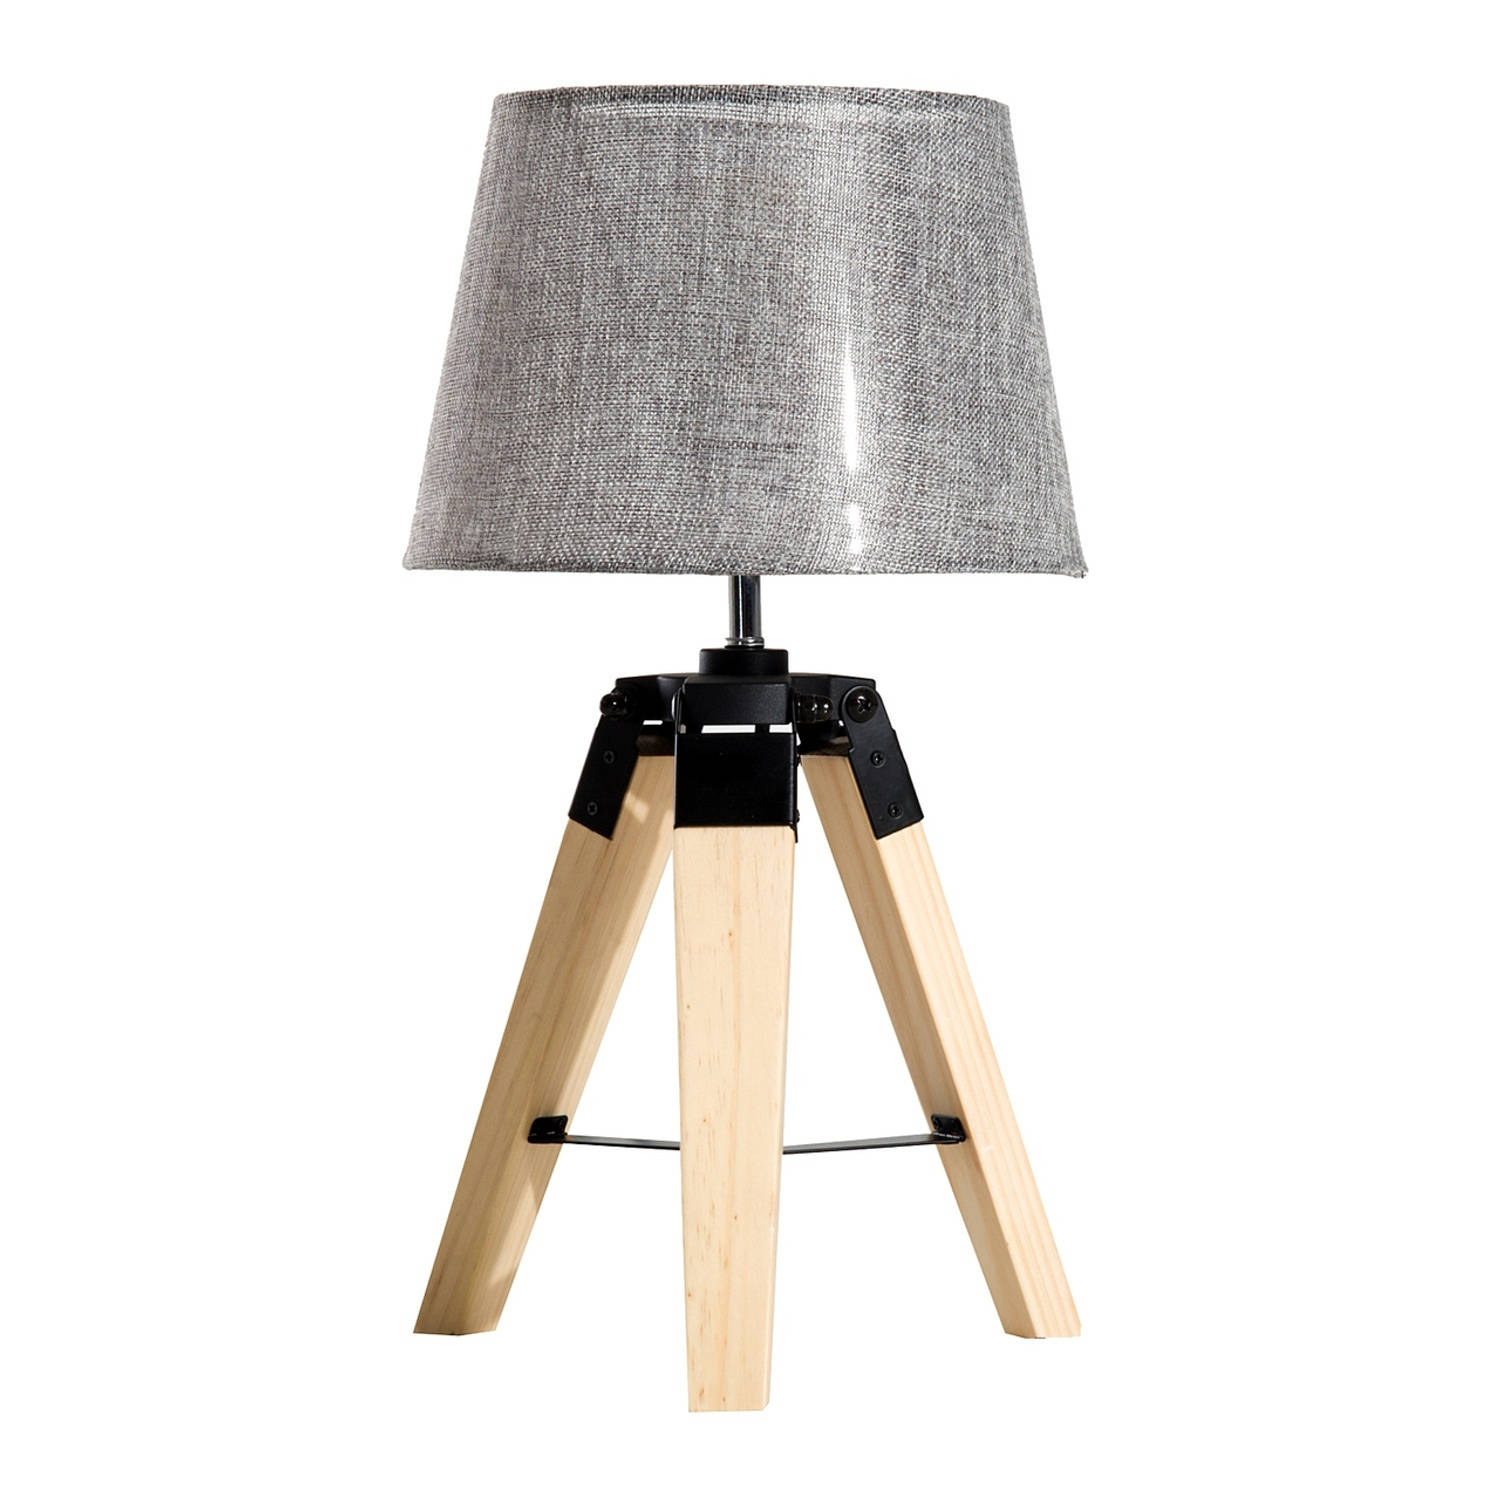 Tafel lamp - Nachtkast lamp - Stoffen kap en houten poten - Driepoot - 45 cm hoog aanbieding